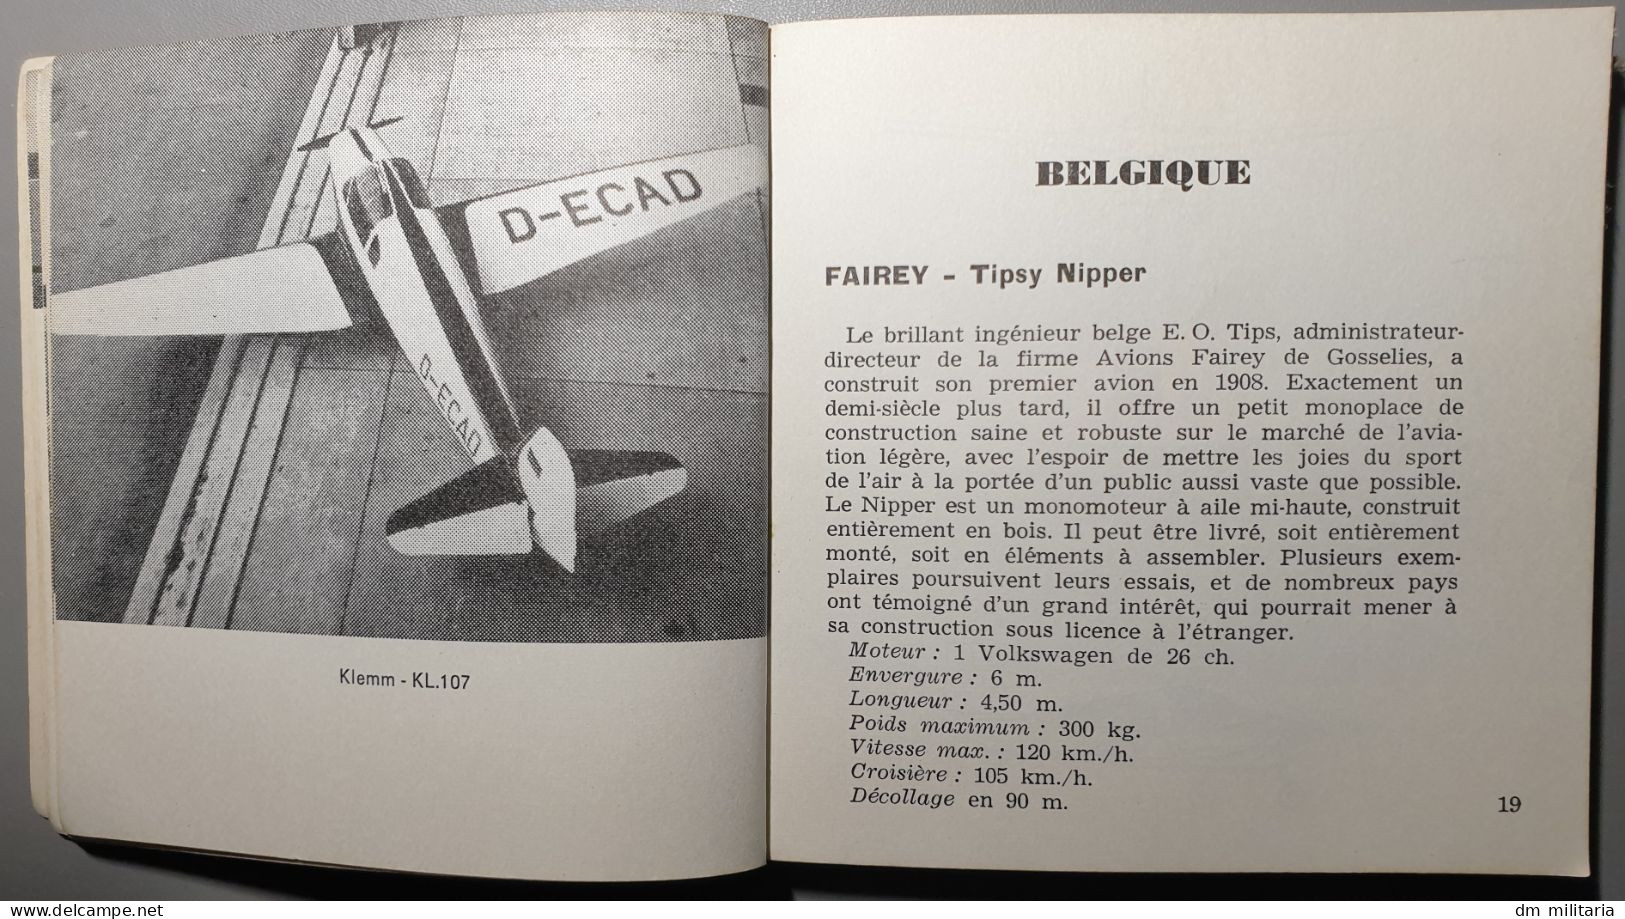 LES AVIONS EUROPÉENS - PIERRE SPARACO - MARABOUT FLASH - 1959 - Flugzeuge